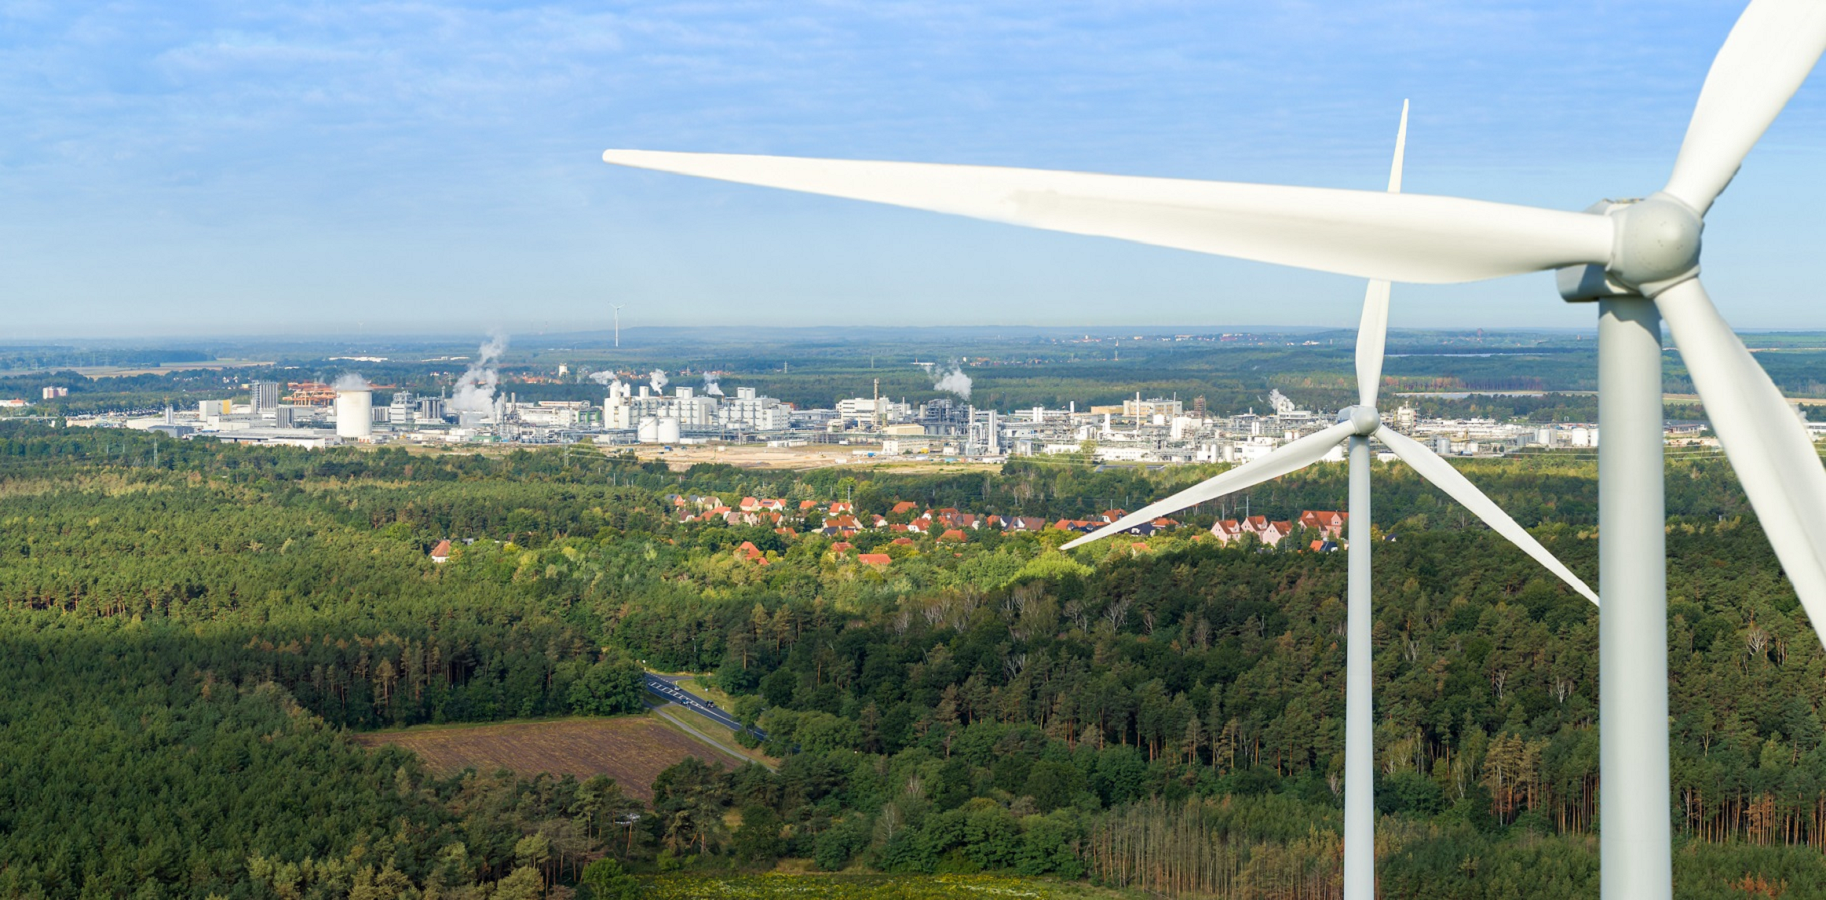 Ereuerbare Energien im Umfeld des BASF-Standorts Schwarzheide.